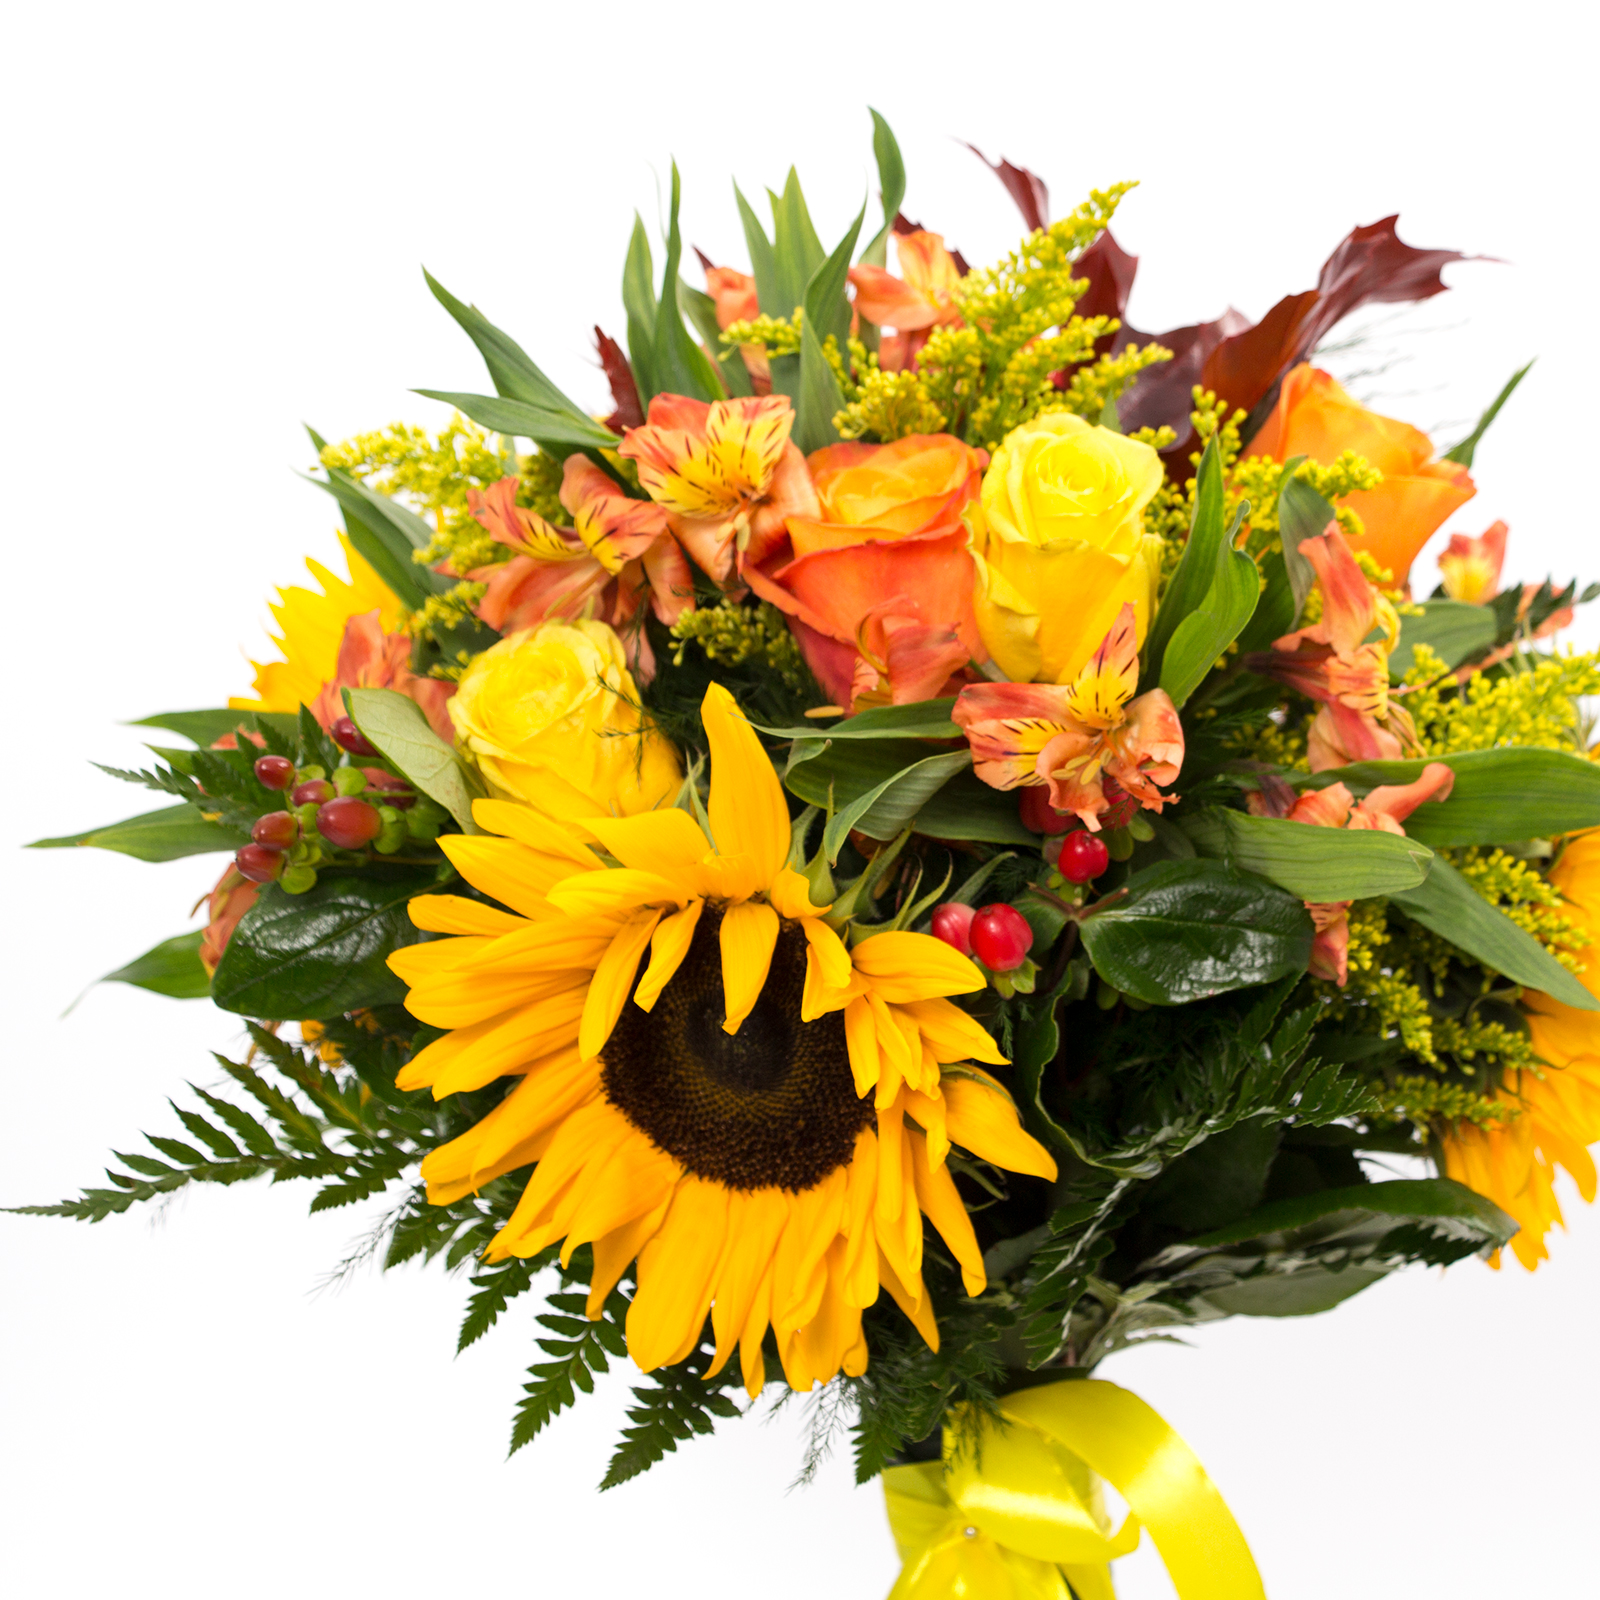 buchete de floarea soarelui, buchete cu flori galbene, flori solare